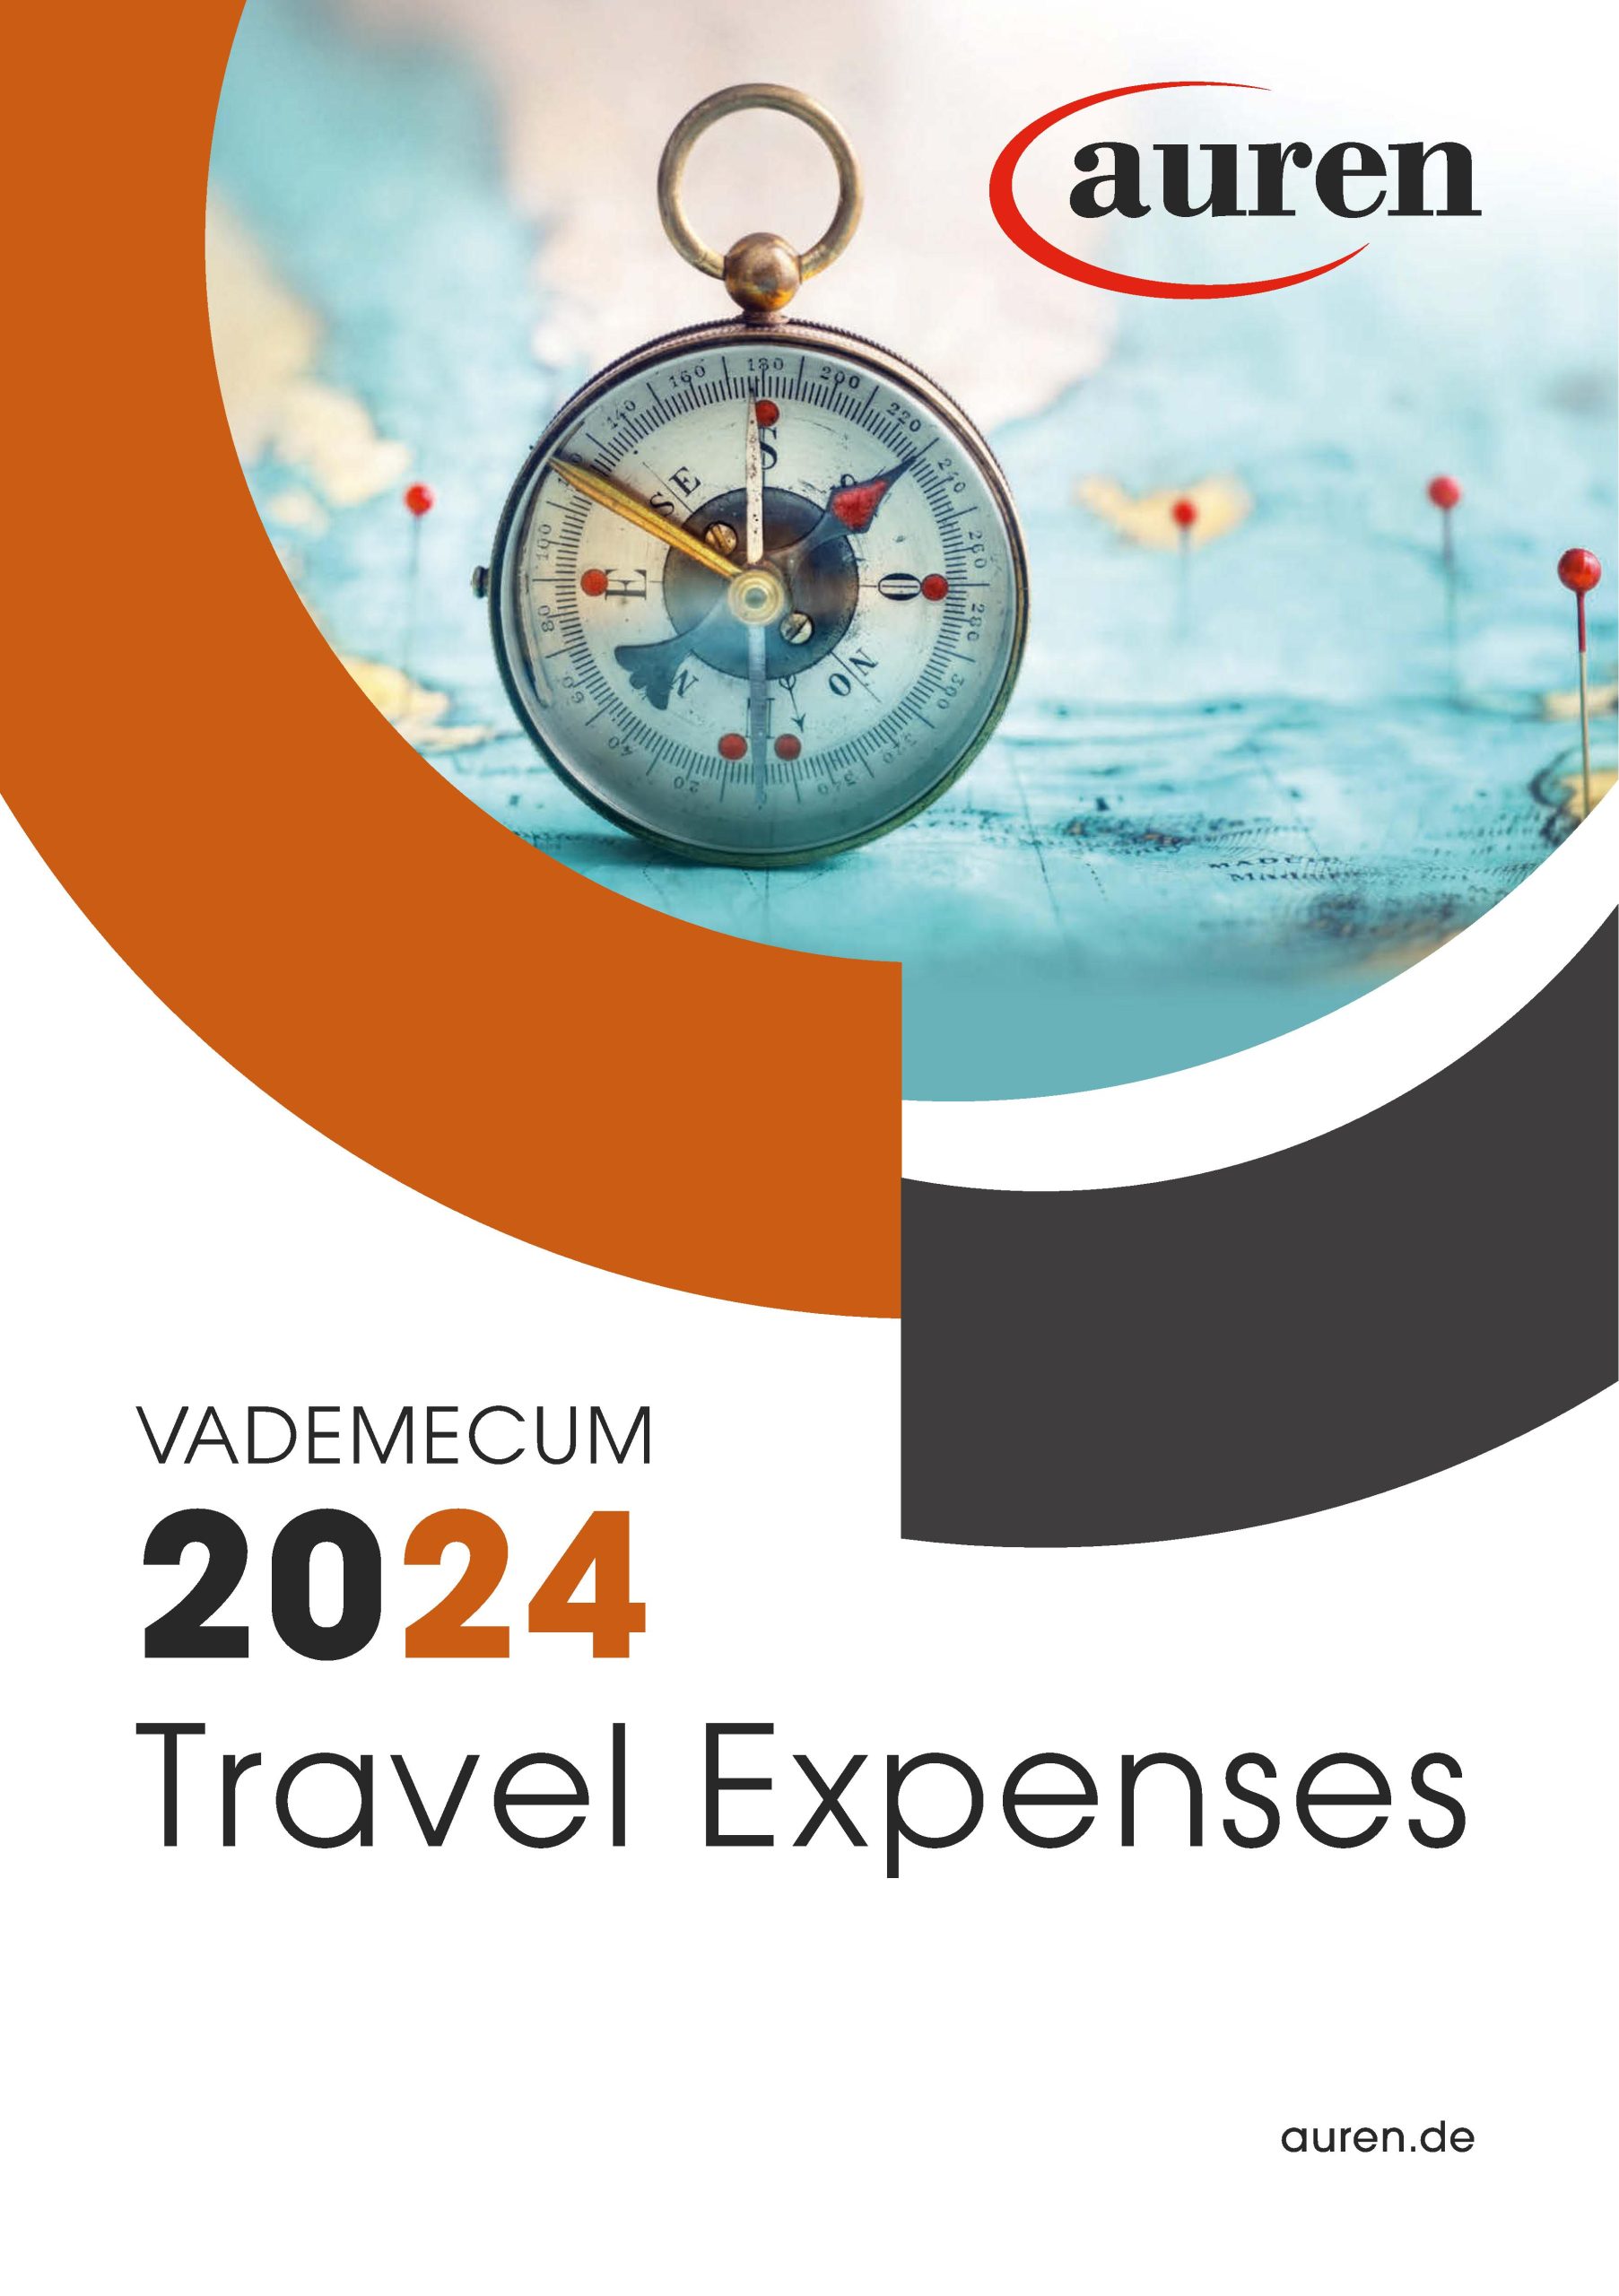 Vademecum 2024 Travel Expenses